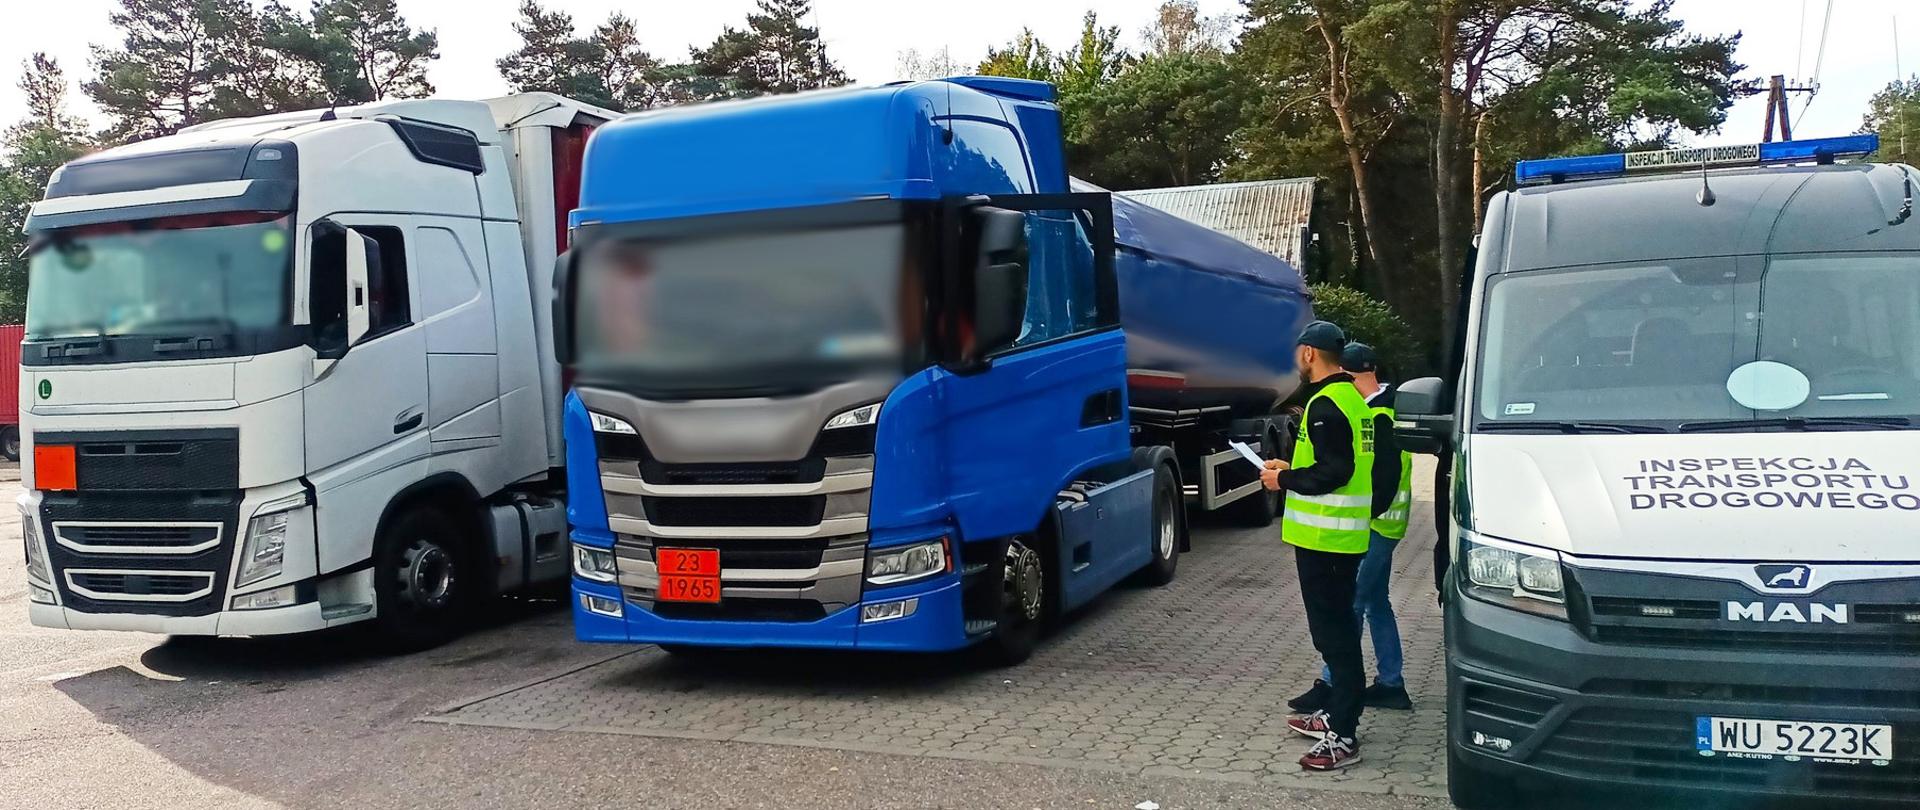 Ciężarówki zatrzymane przez inspektorów wielkopolskiej Inspekcji Transportu Drogowego
